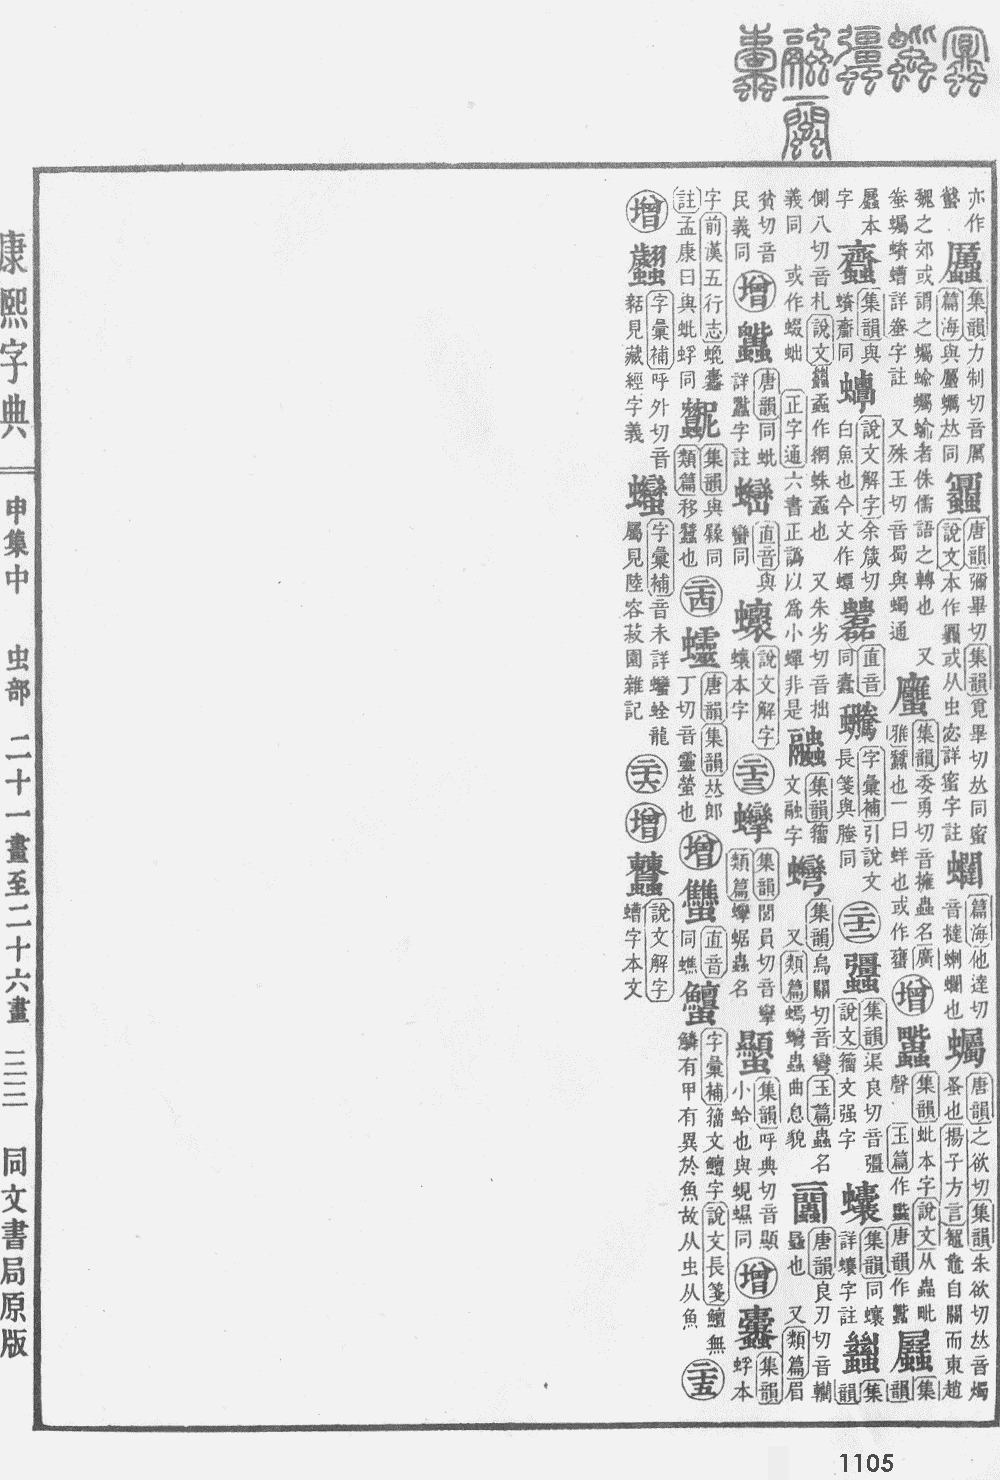 康熙字典掃描版第1105頁